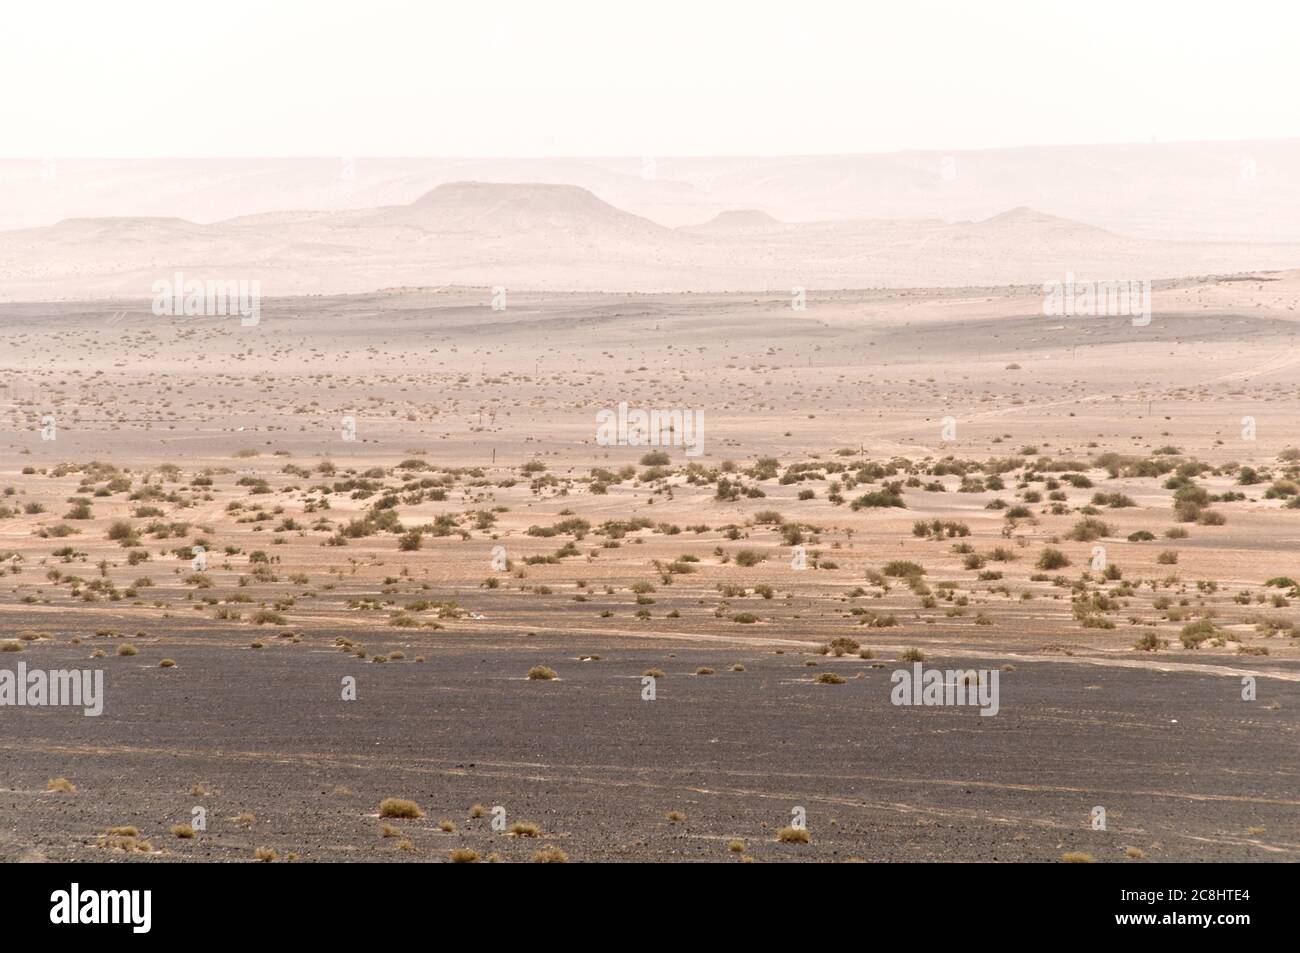 Die Badia Region der verlassenen jordanischen östlichen Wüste lang die Grenze von Saudi-Arabien, in der Nähe von al-Omari, Jordanien. Stockfoto